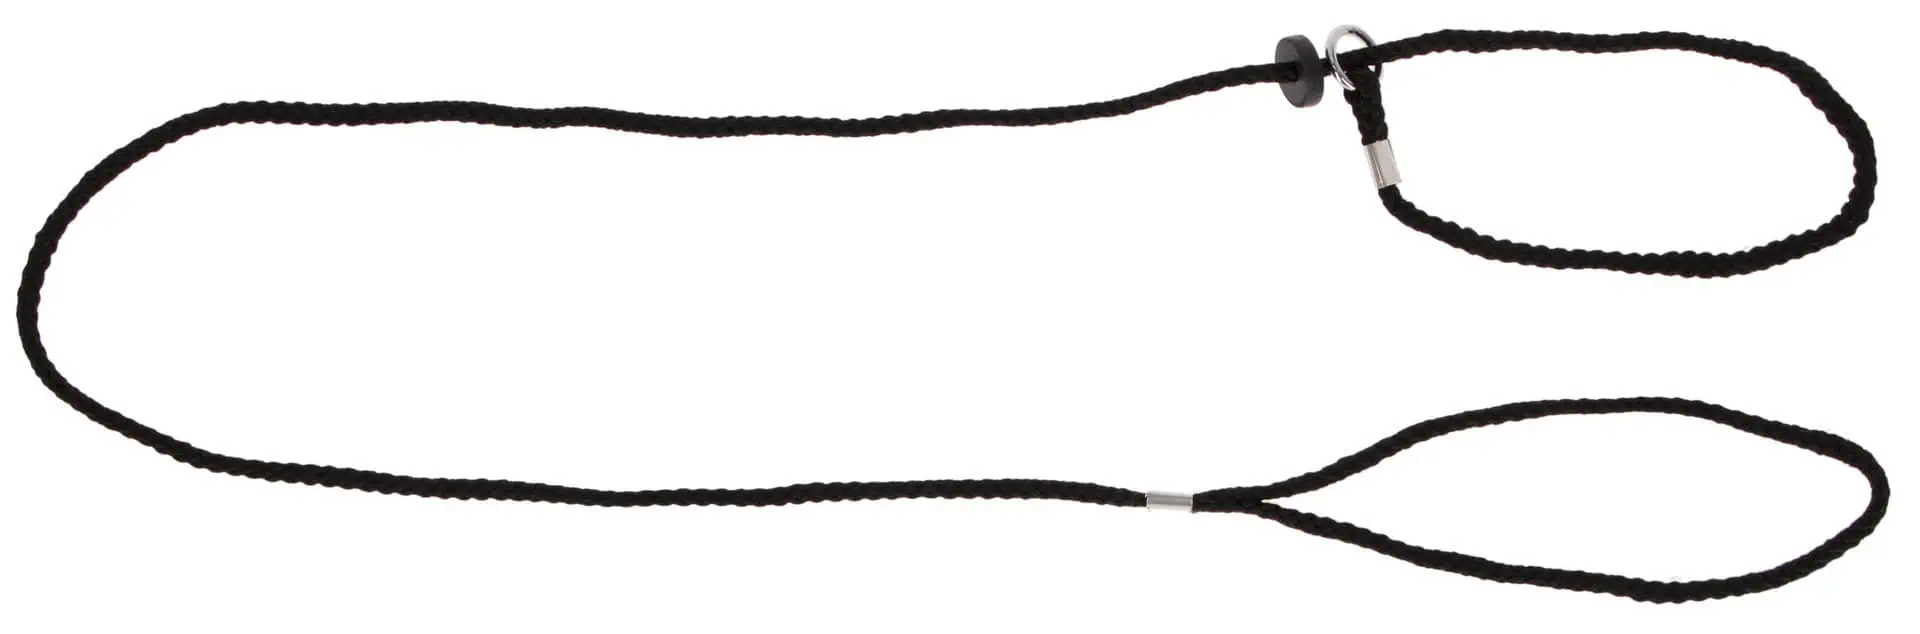 Vorführleine schwarz Nylon mit Halsung 6 mm x 125 cm